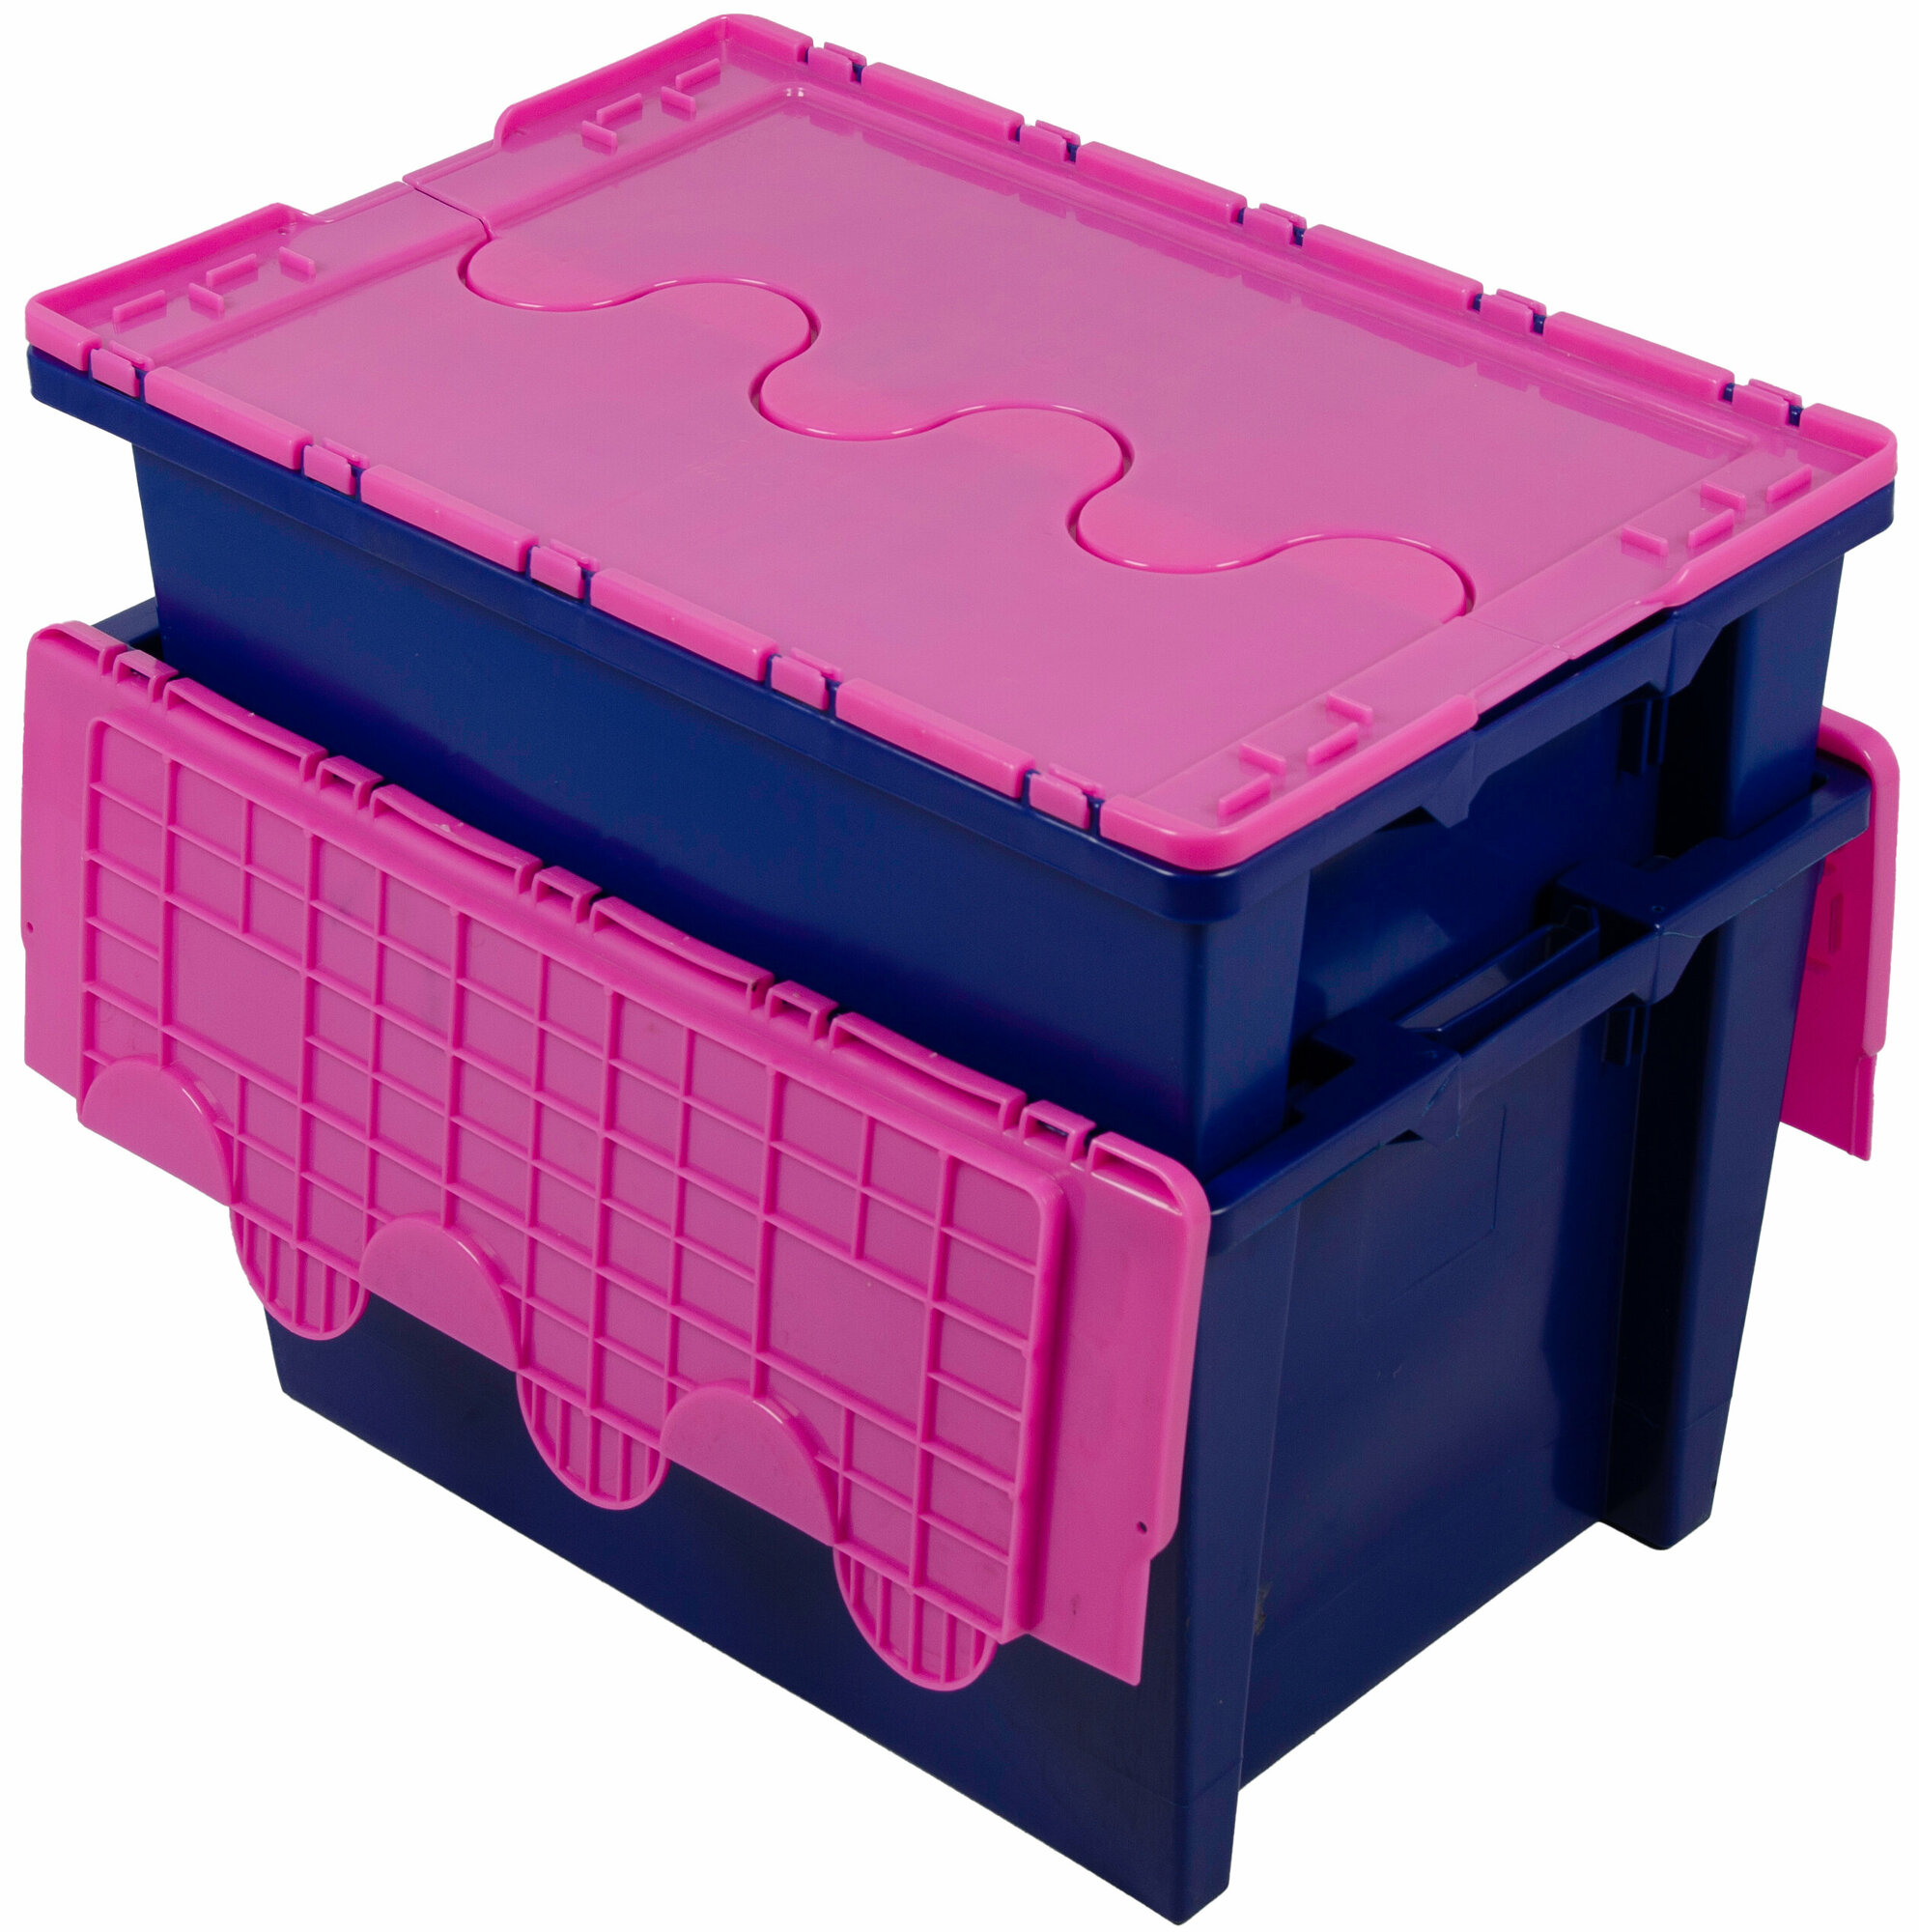 Ящик для хранения Safe Pro ПКФ Топаз 600400365-00 сплошной синий, с крышкой розовой